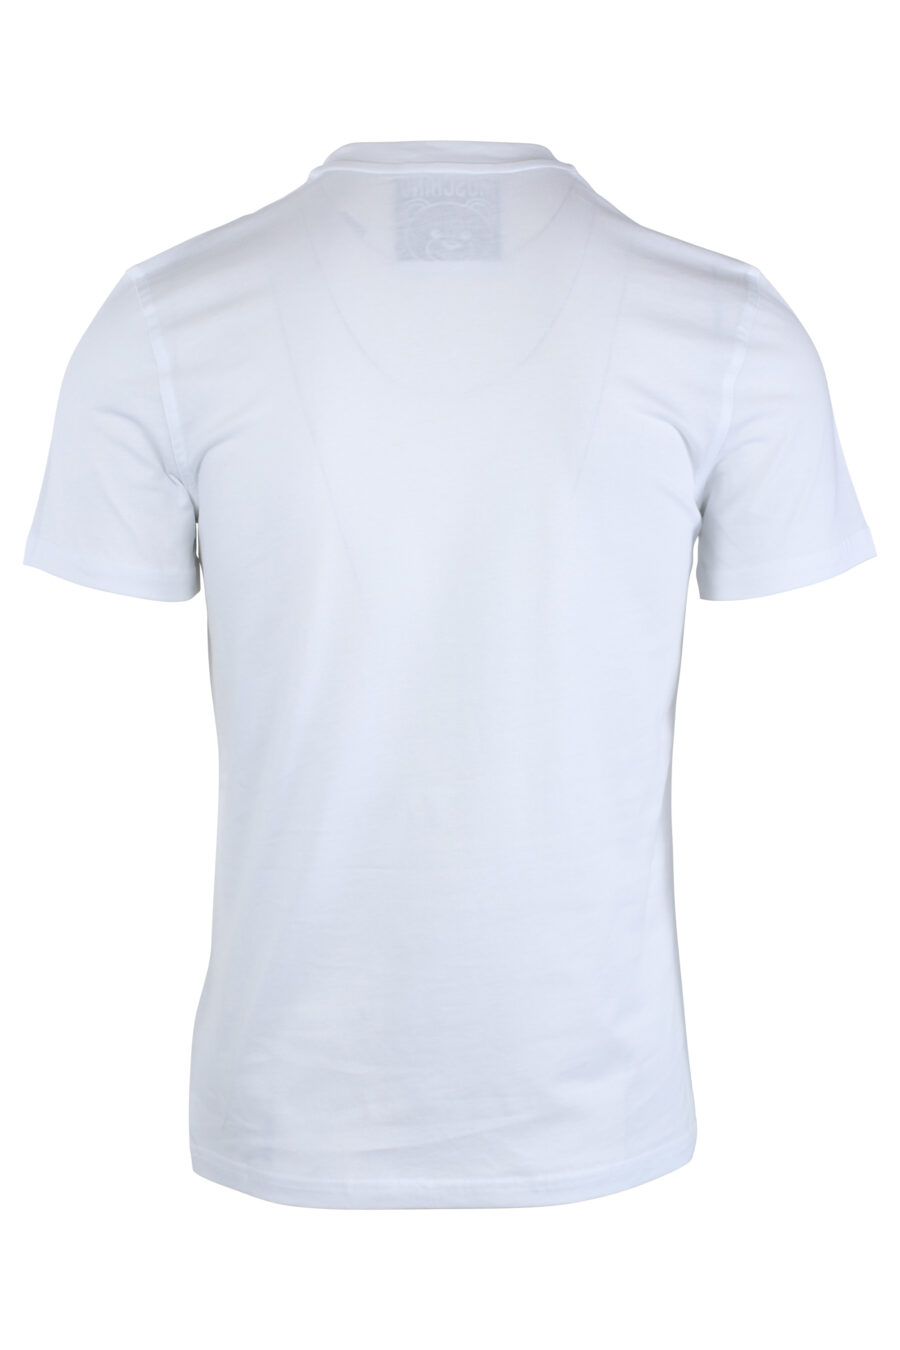 Camiseta blanca con minilogo oso monocromático - IMG 1650